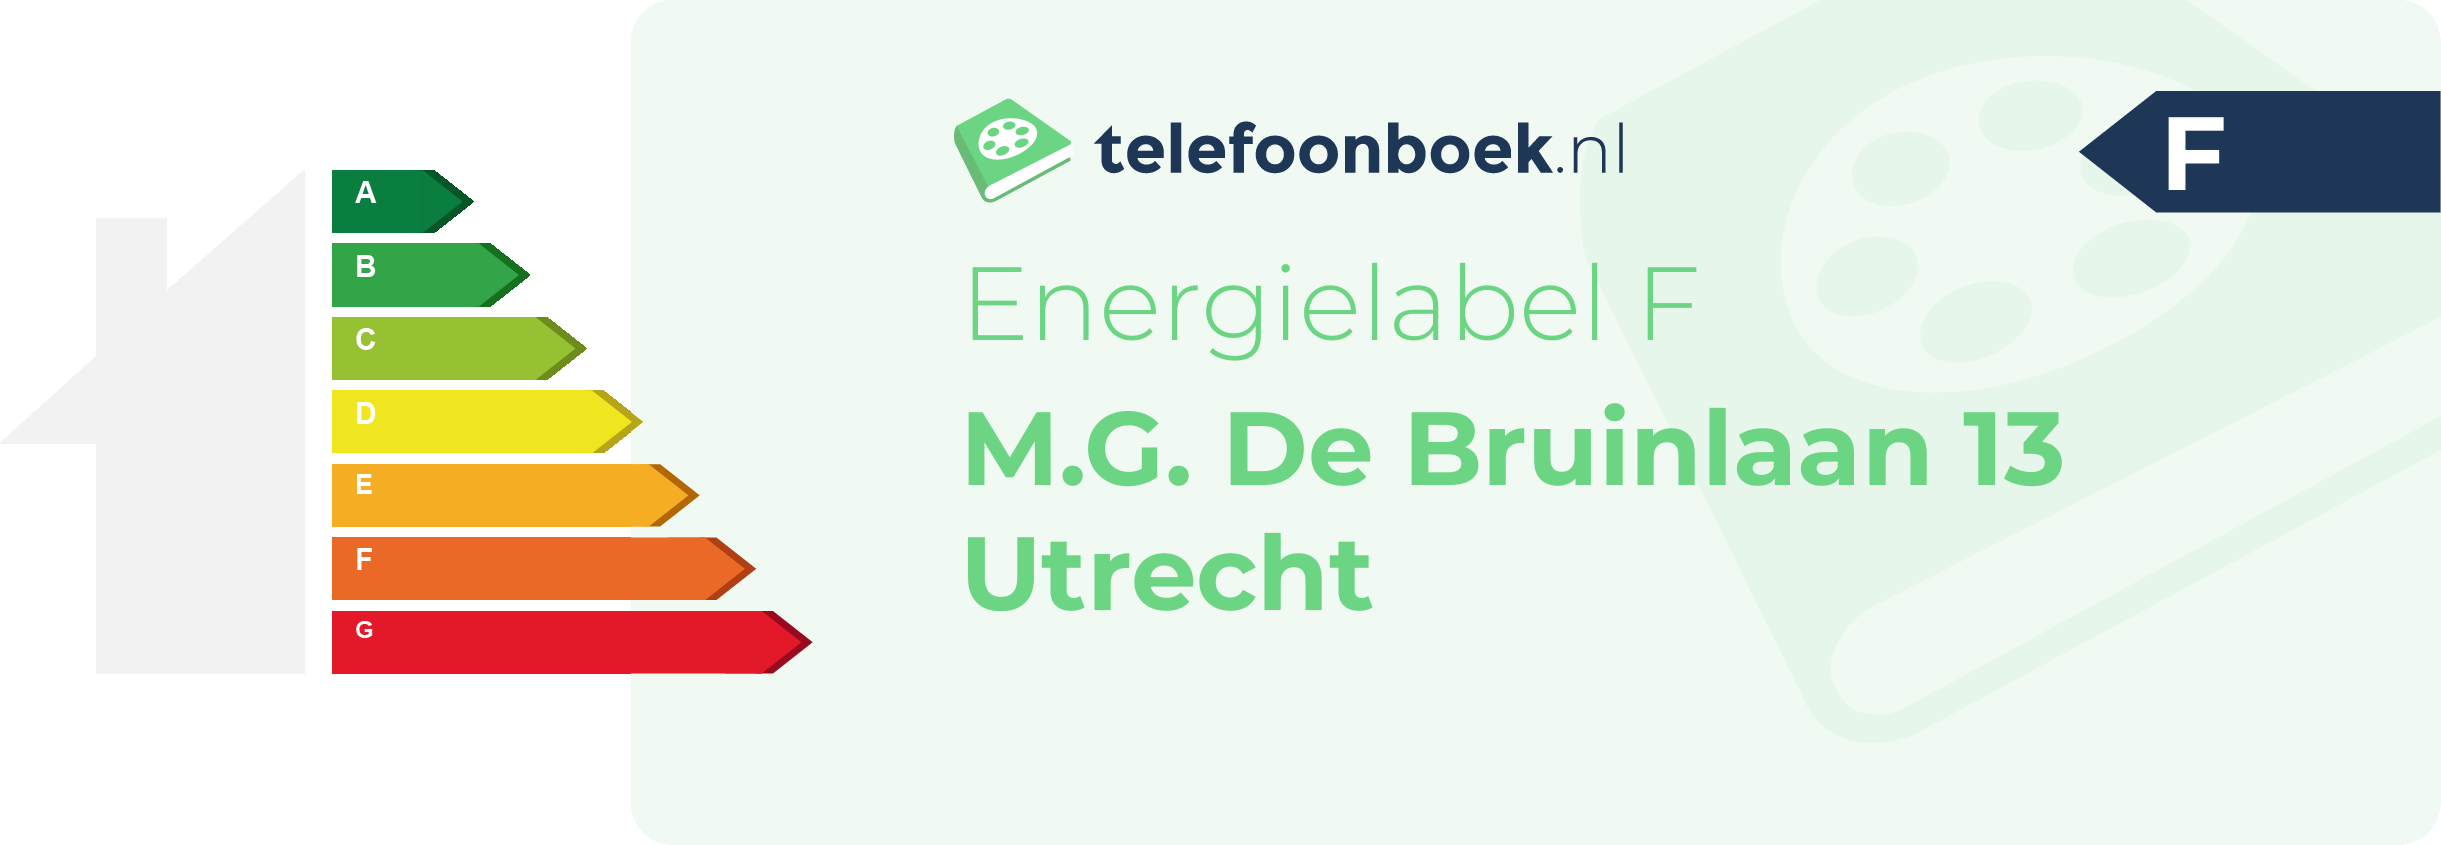 Energielabel M.G. De Bruinlaan 13 Utrecht